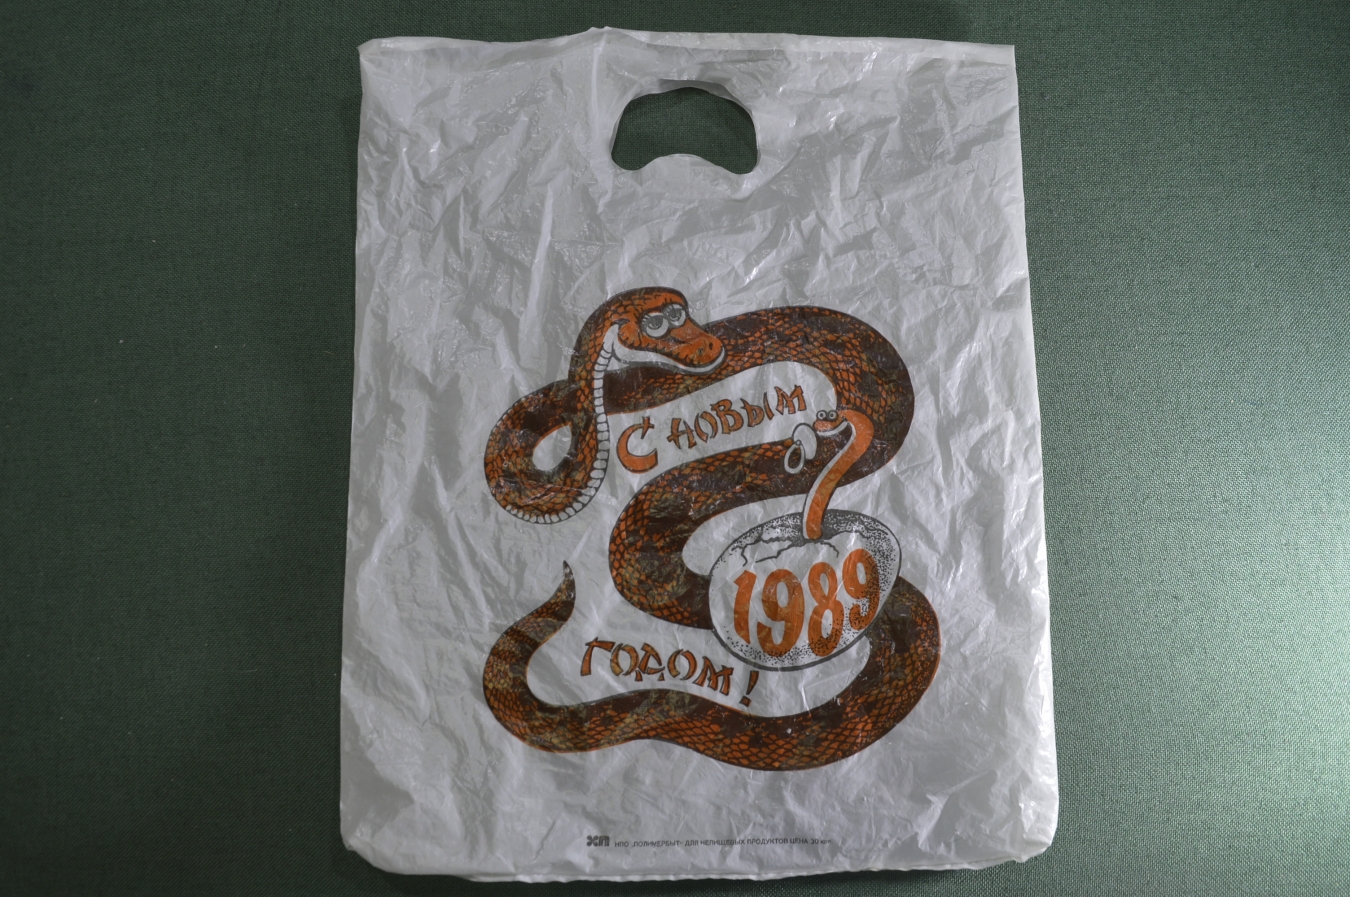 Змея 1989 какая змея. Год змеи 1989. Змея 1989 года. Полиэтиленовый пакет идёт. Год змеи 1989 СССР брелок.